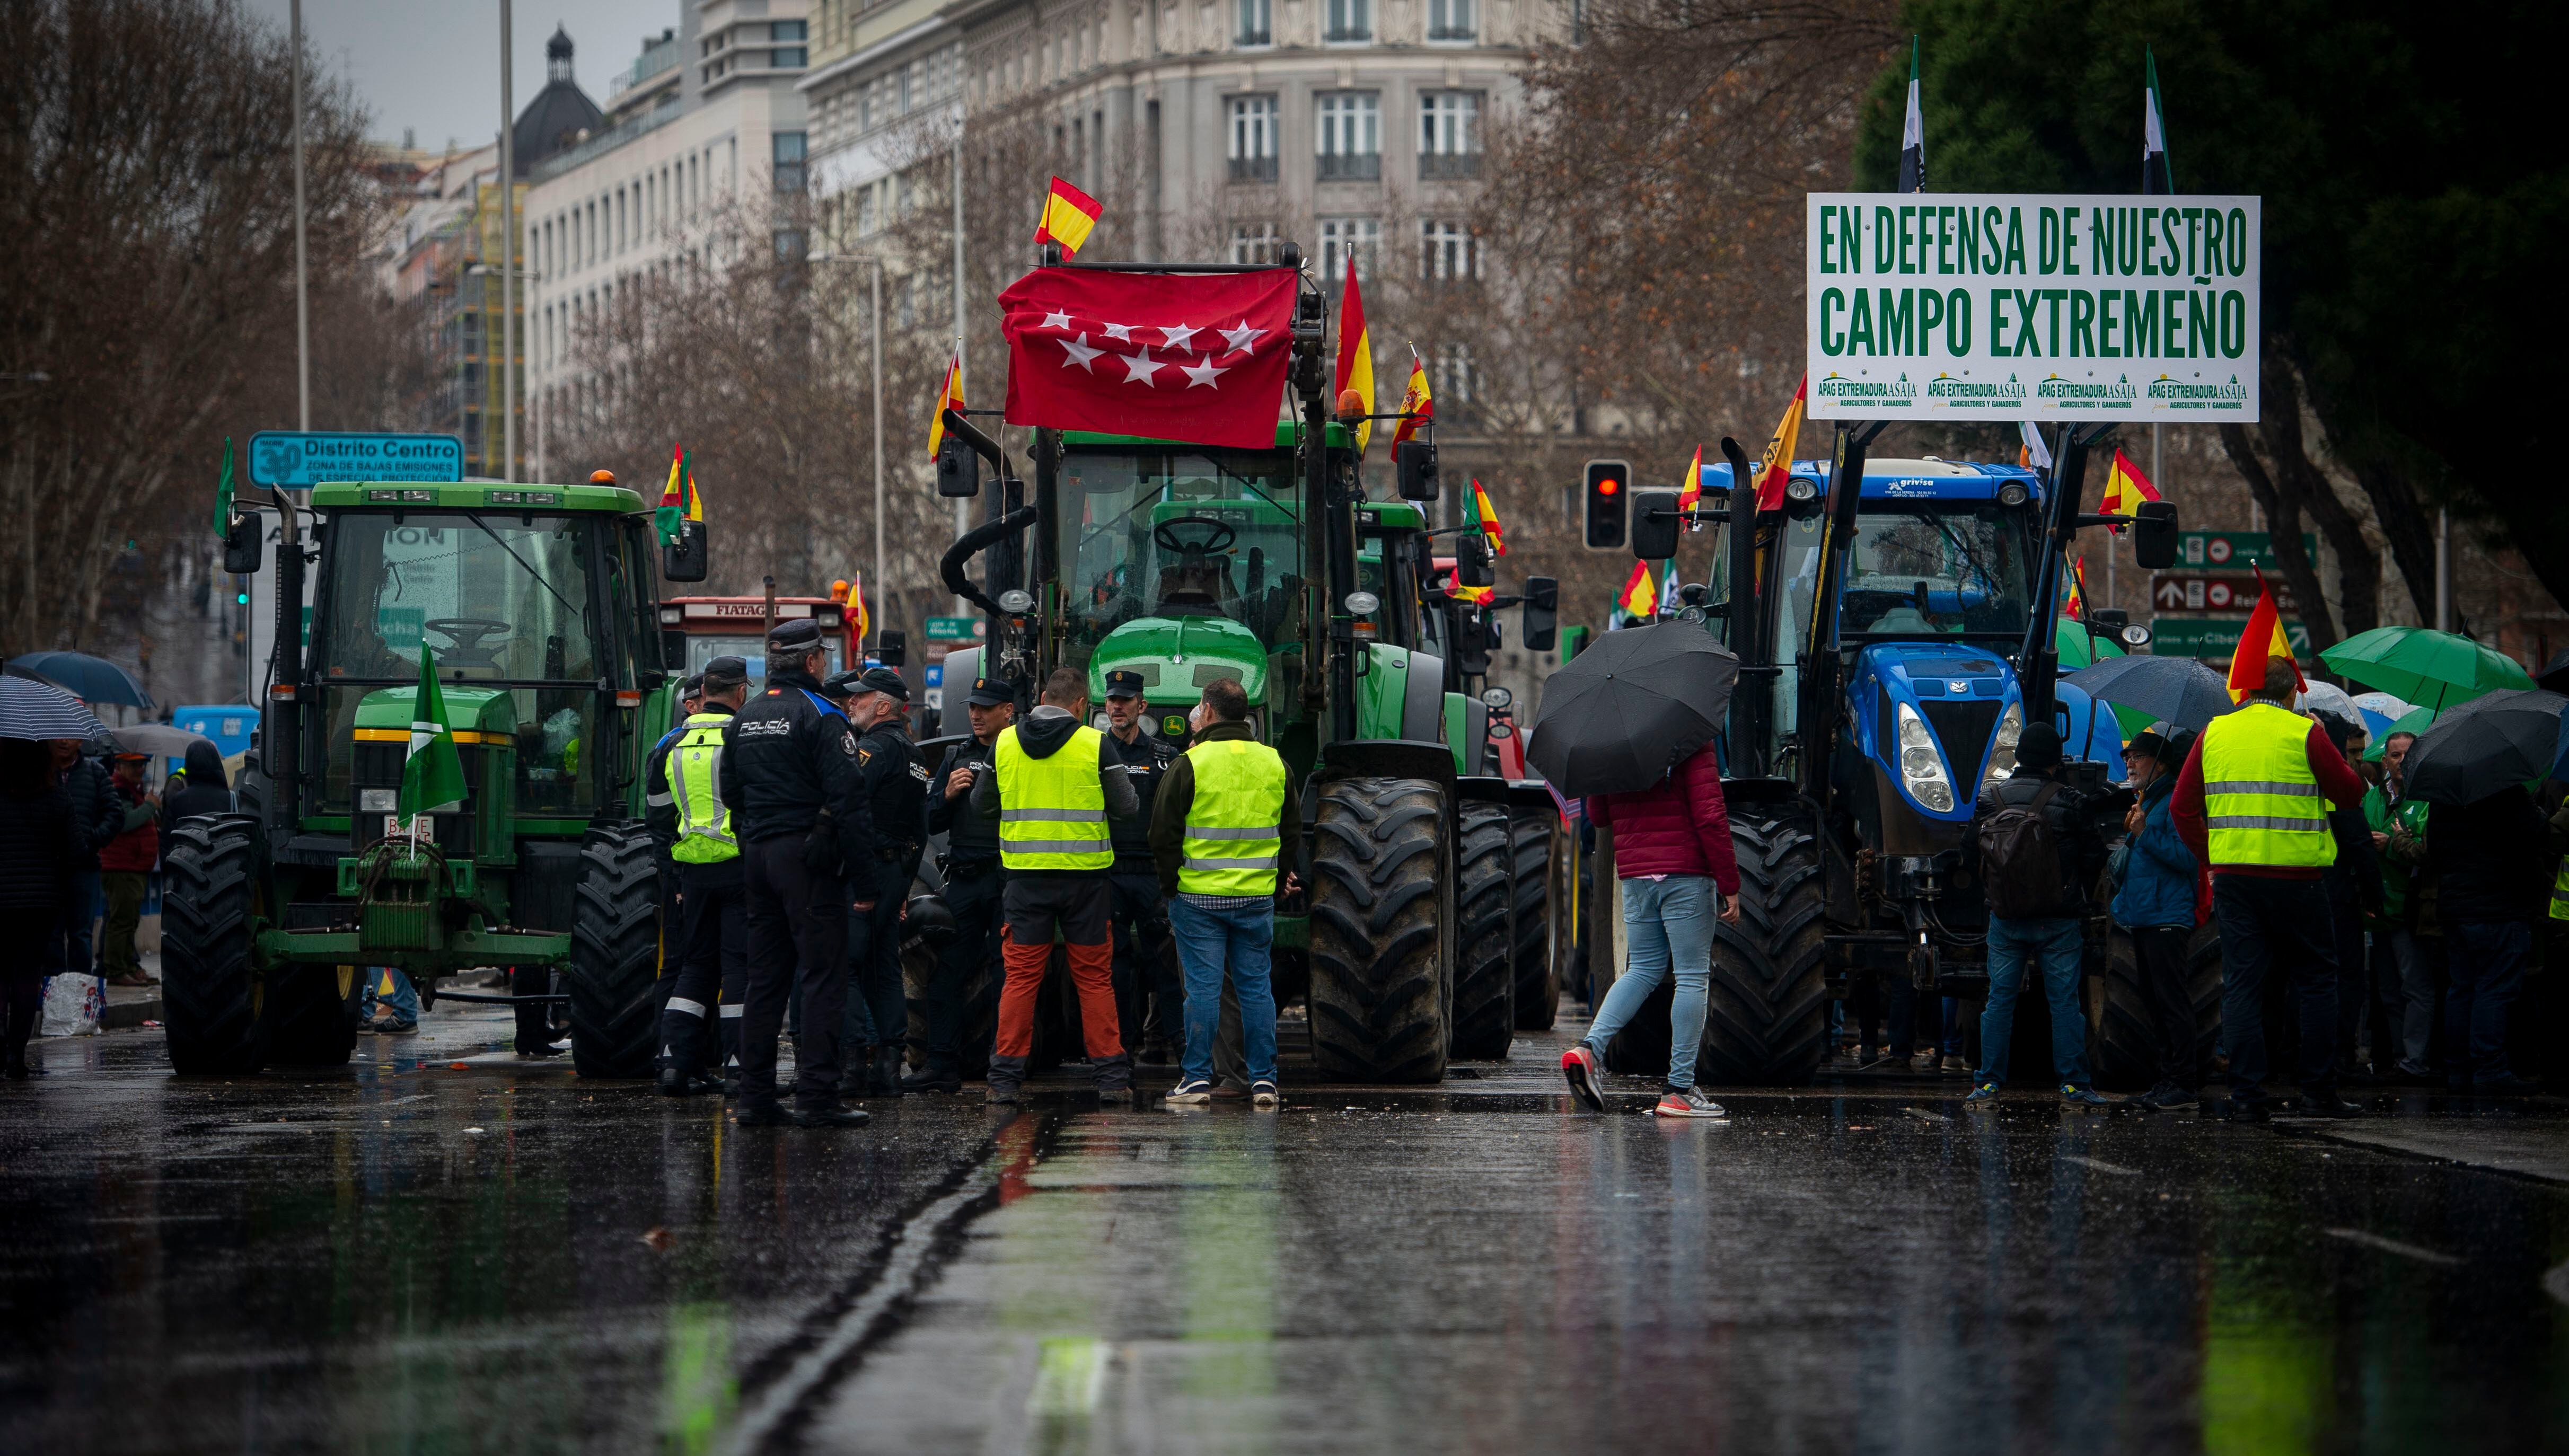 Agricultores y ganaderos conversan con agentes de policía durante la protesta frente al ministerio, este jueves en Madrid.